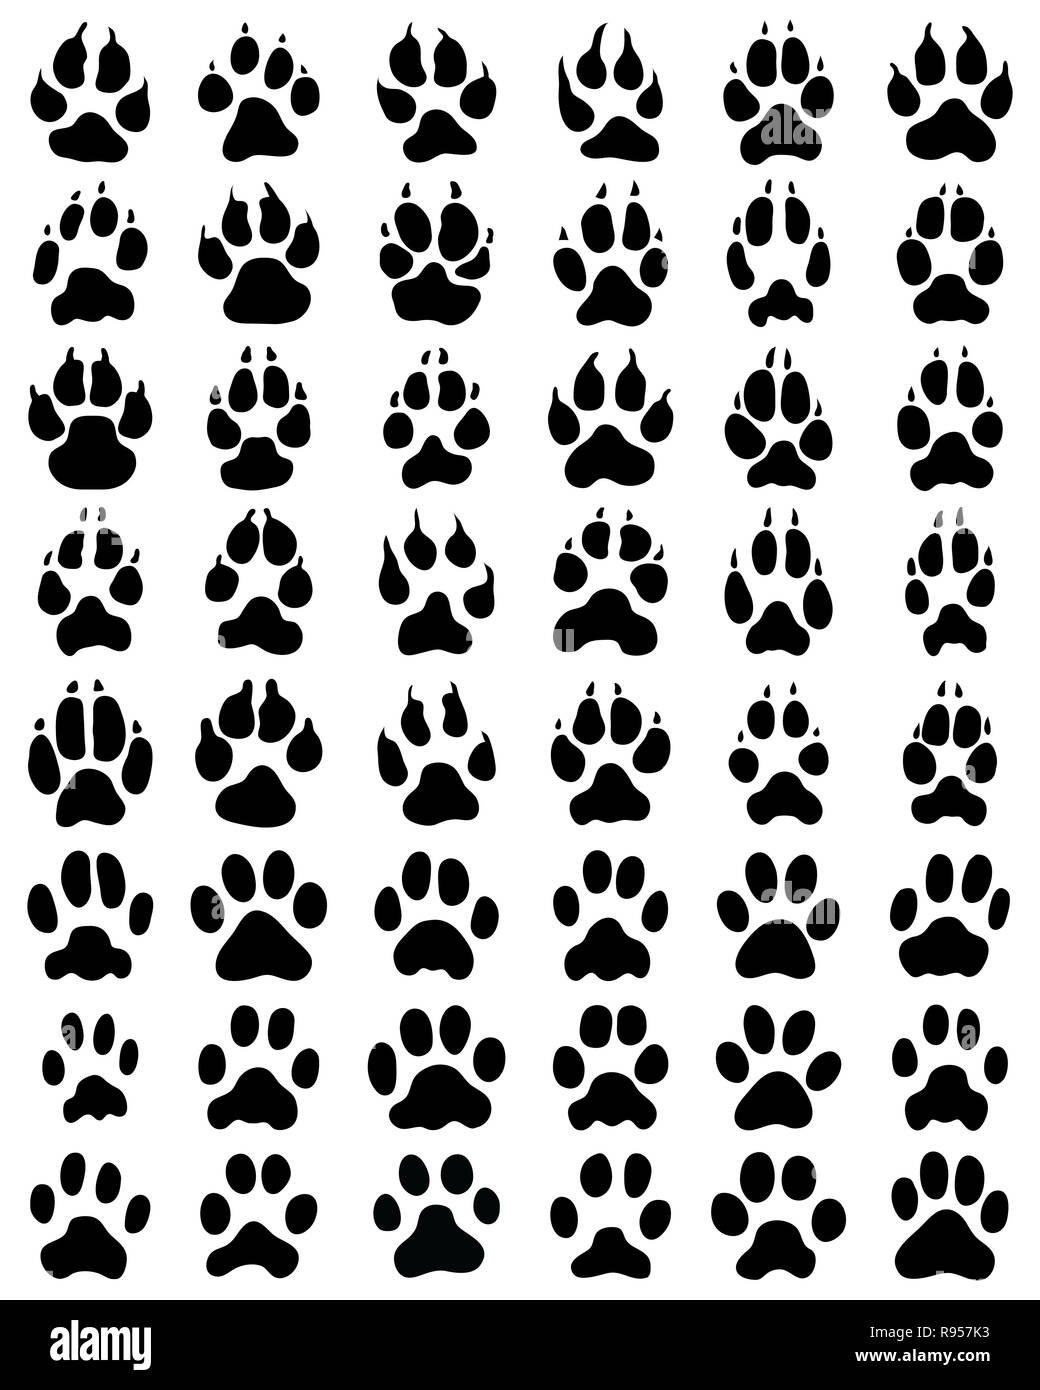 Impression noire de pattes de chiens et chats sur fond blanc Banque D'Images